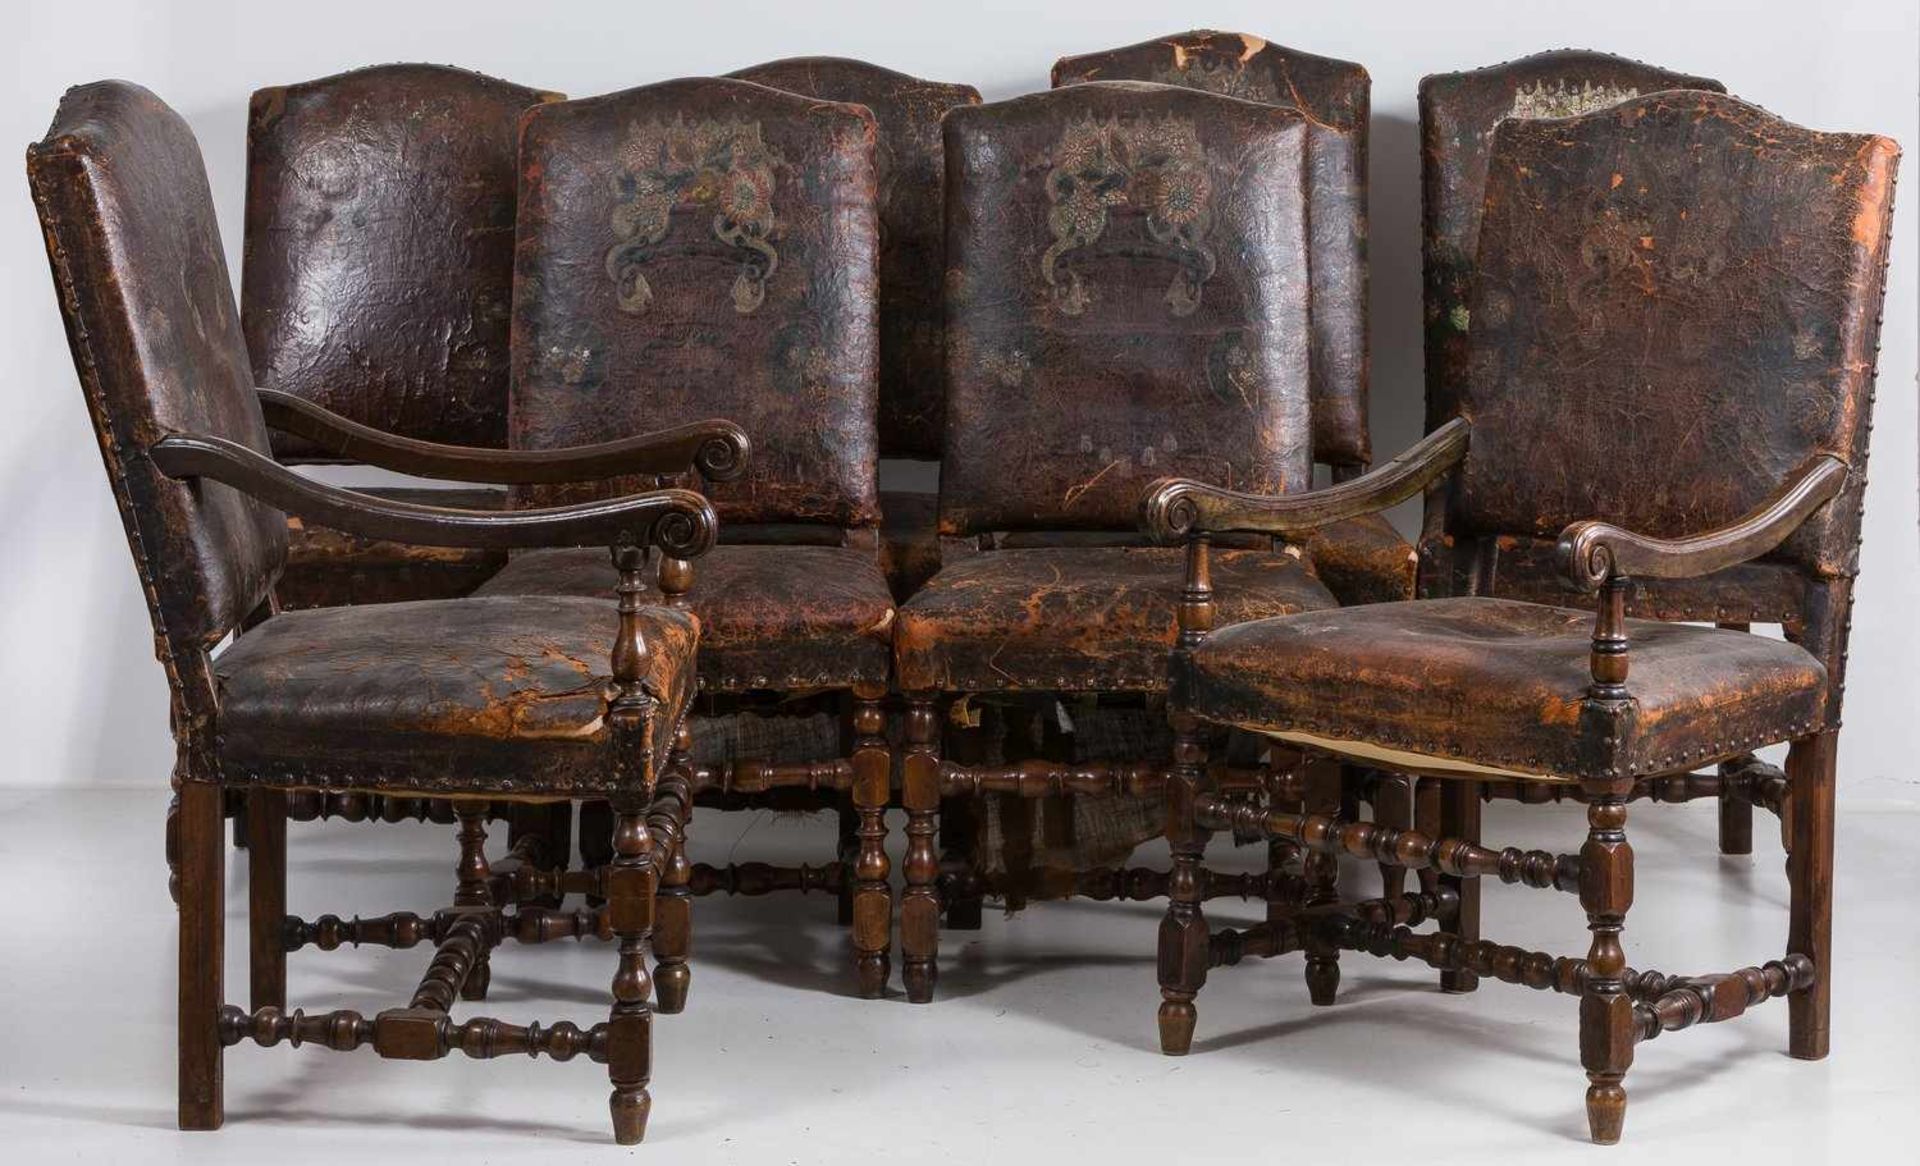 Sechs Stühle u. zwei Armlehnstühle Louis XIII wohl 17. Jh.Nussbaum. Balusterbeine mit H-förmiger